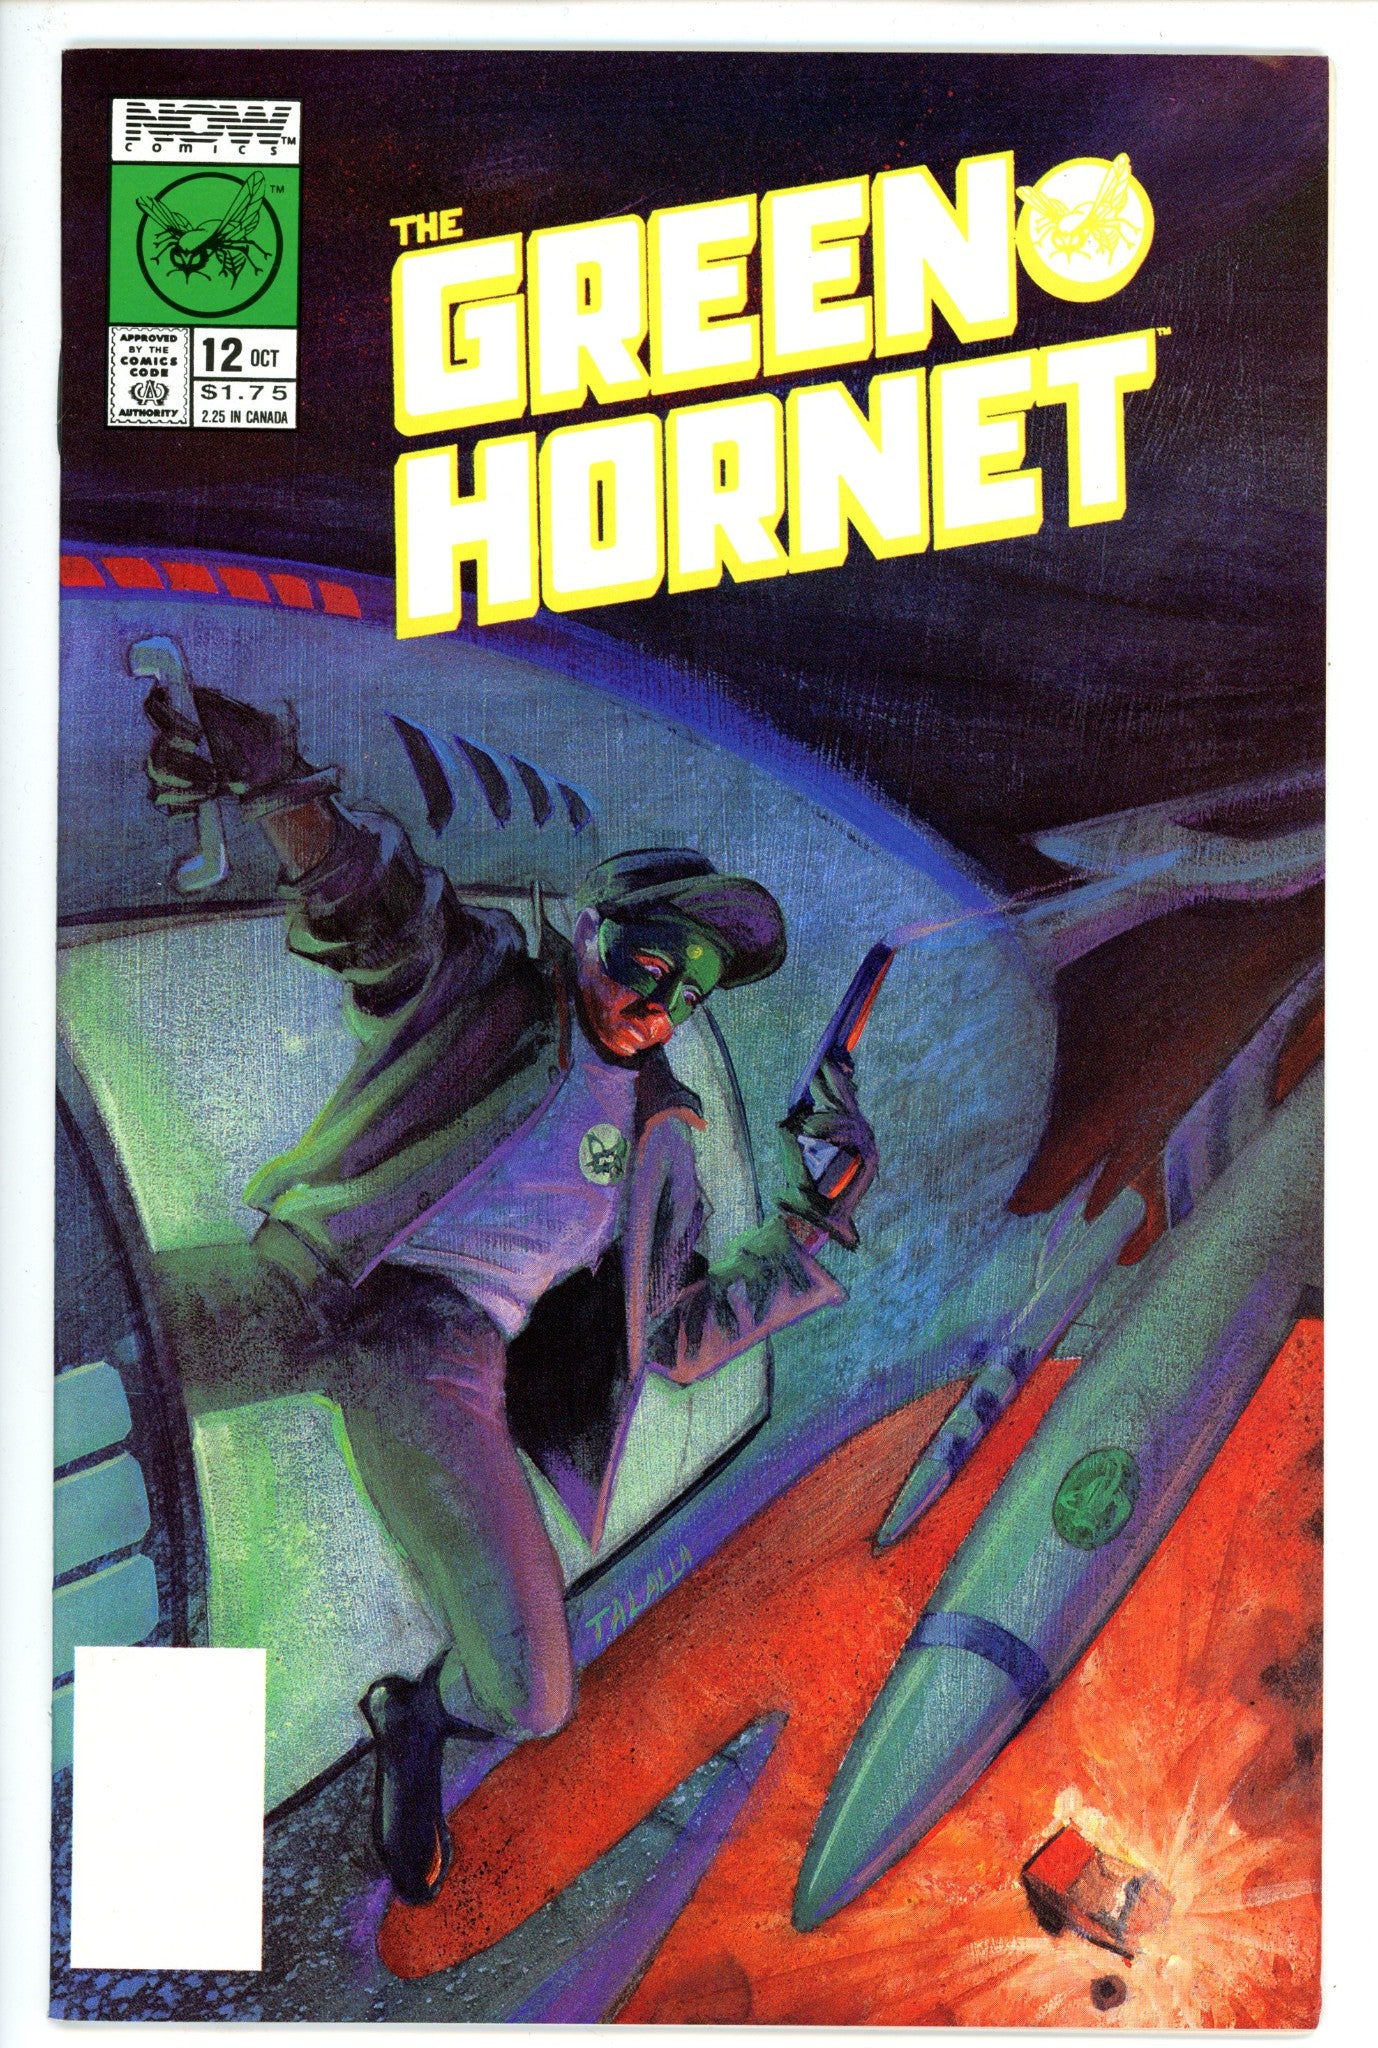 Green Hornet Vol 1 12